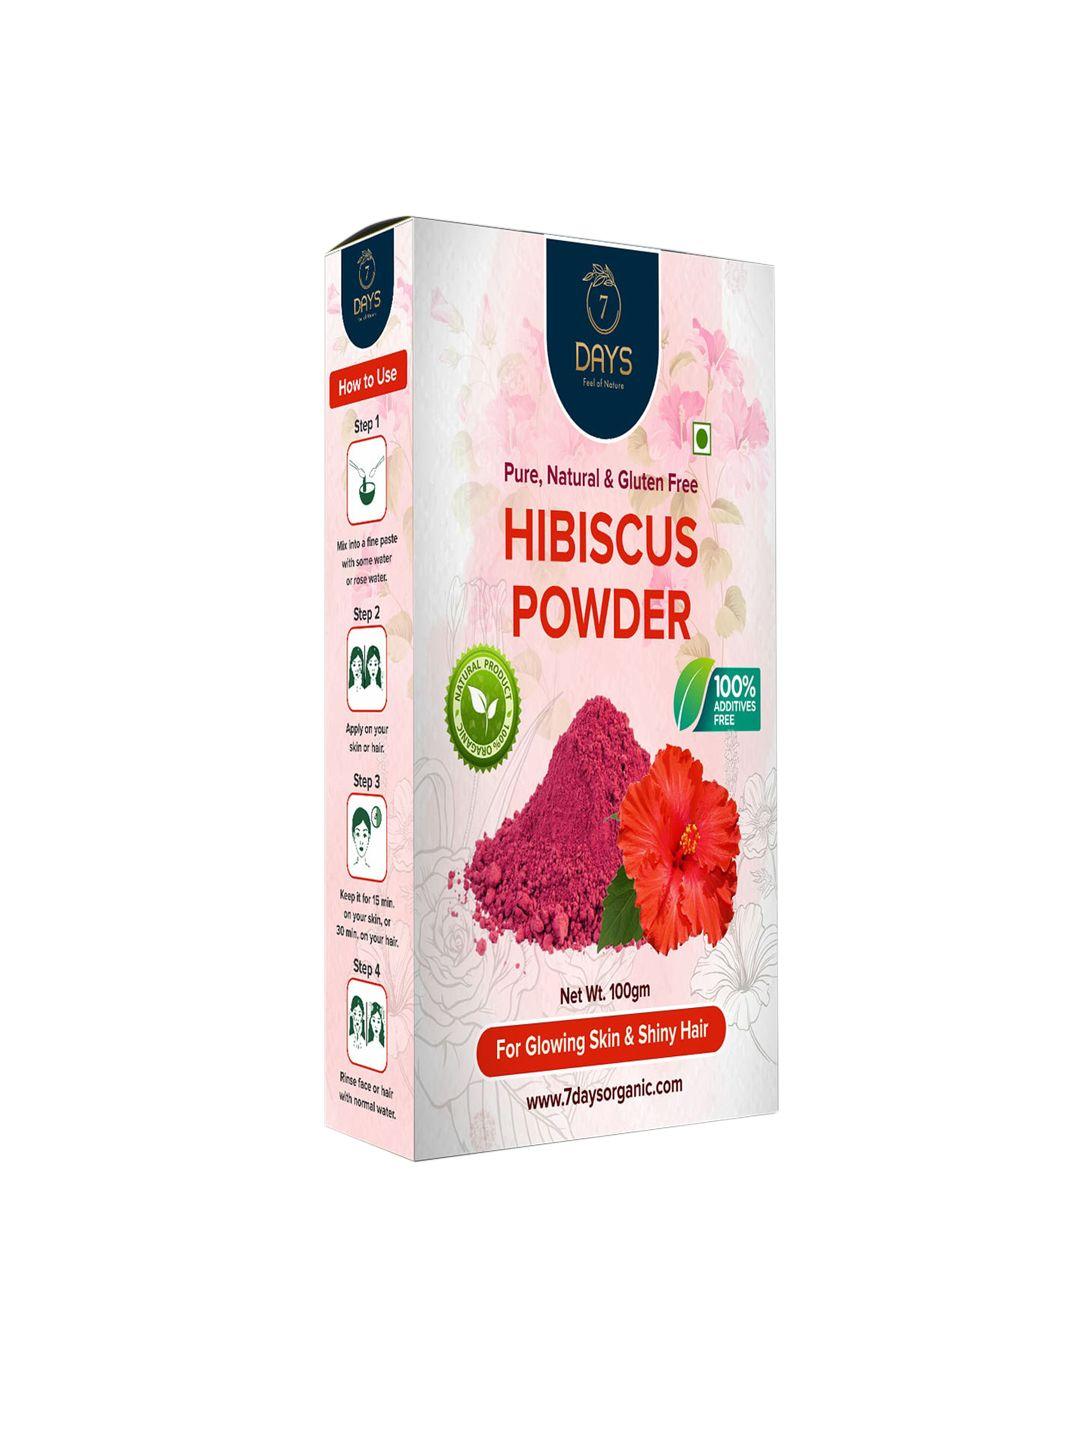 7 days natural & gluten free hibiscus powder 100gm